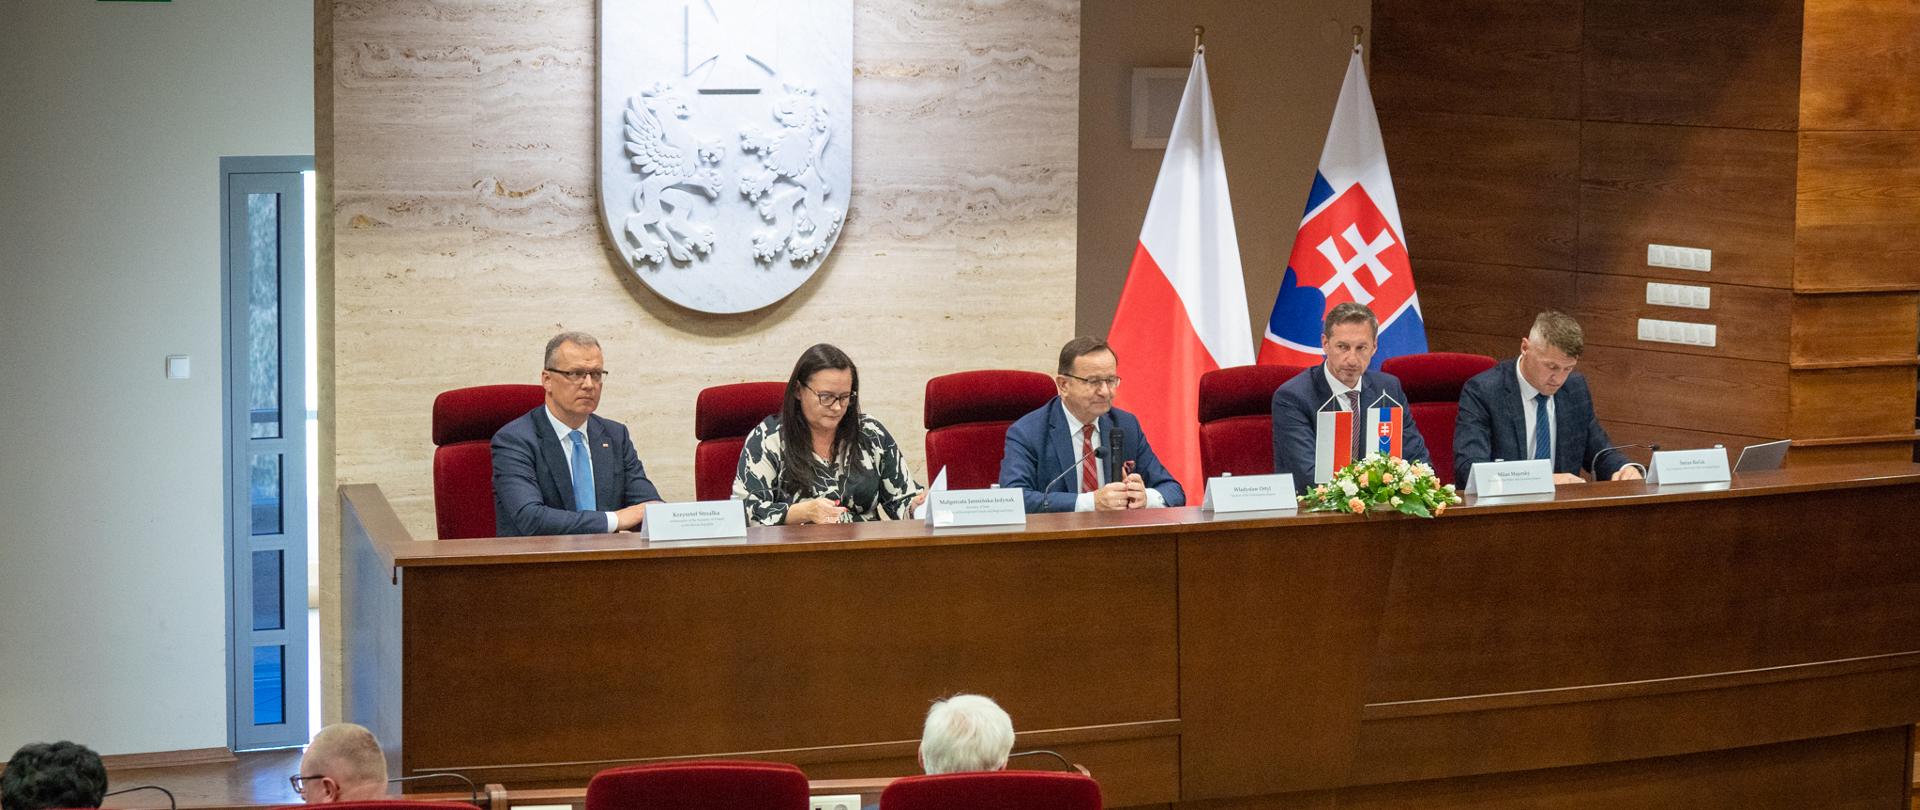 Pięć osób siedzi obok siebie przy stole. W samy środku siedzi wiceminister Małgorzata Jarosińska-Jedynak.